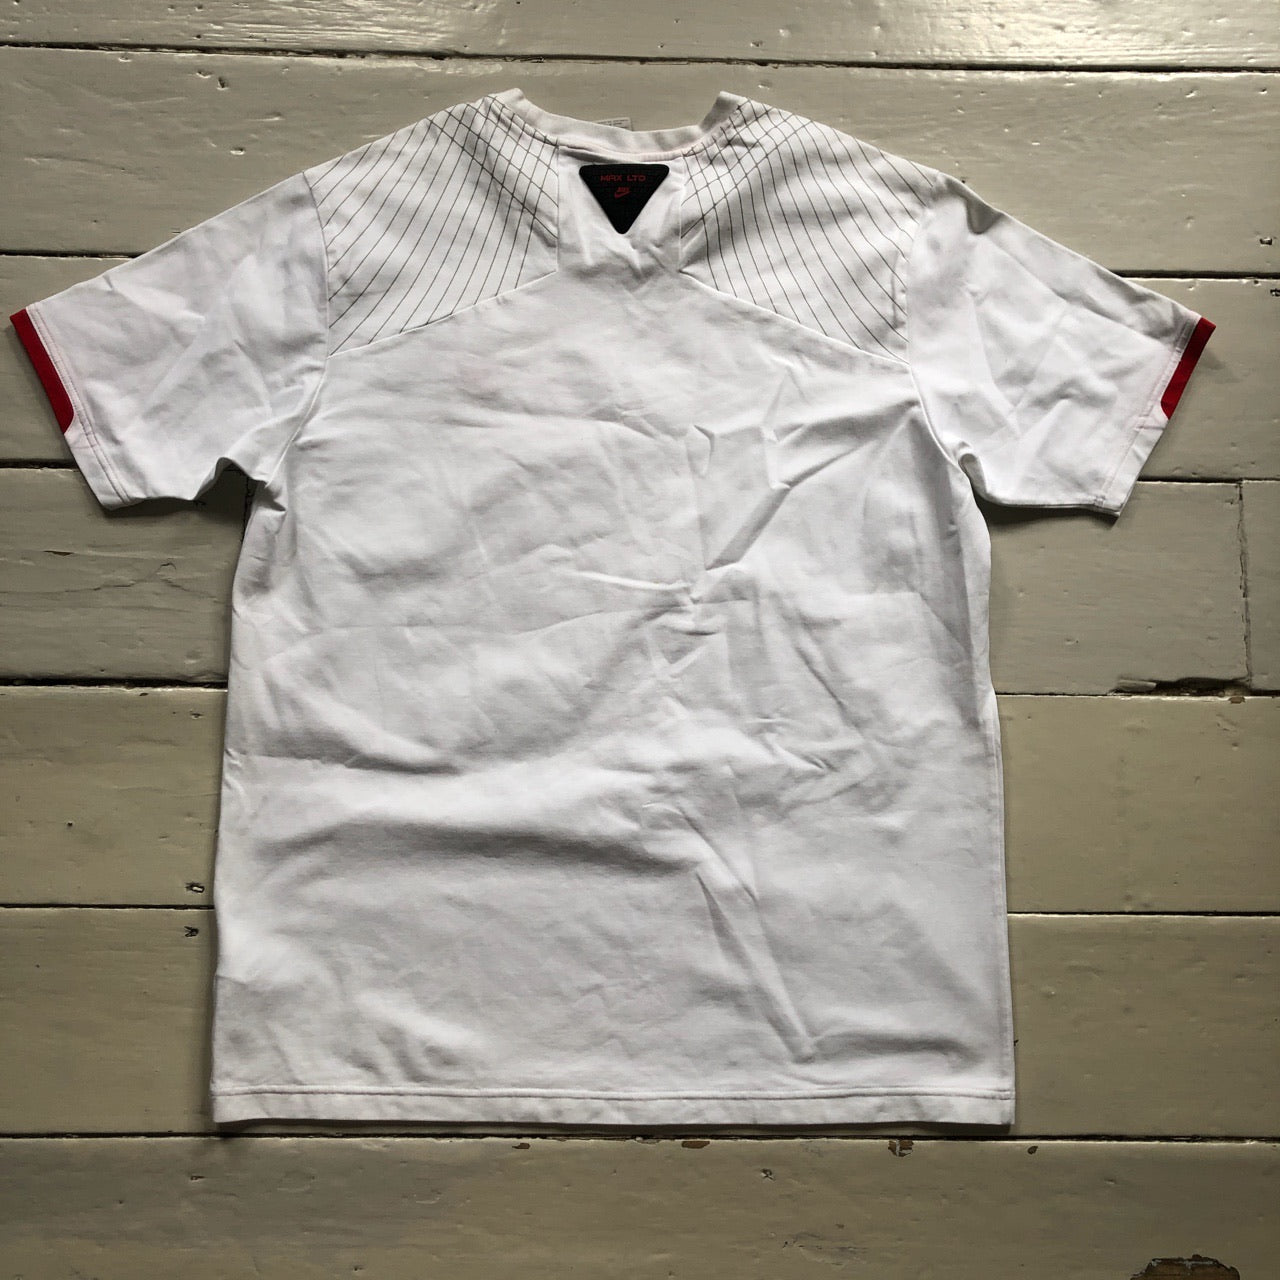 Nike Air Max LTD T-Shirt (XL)